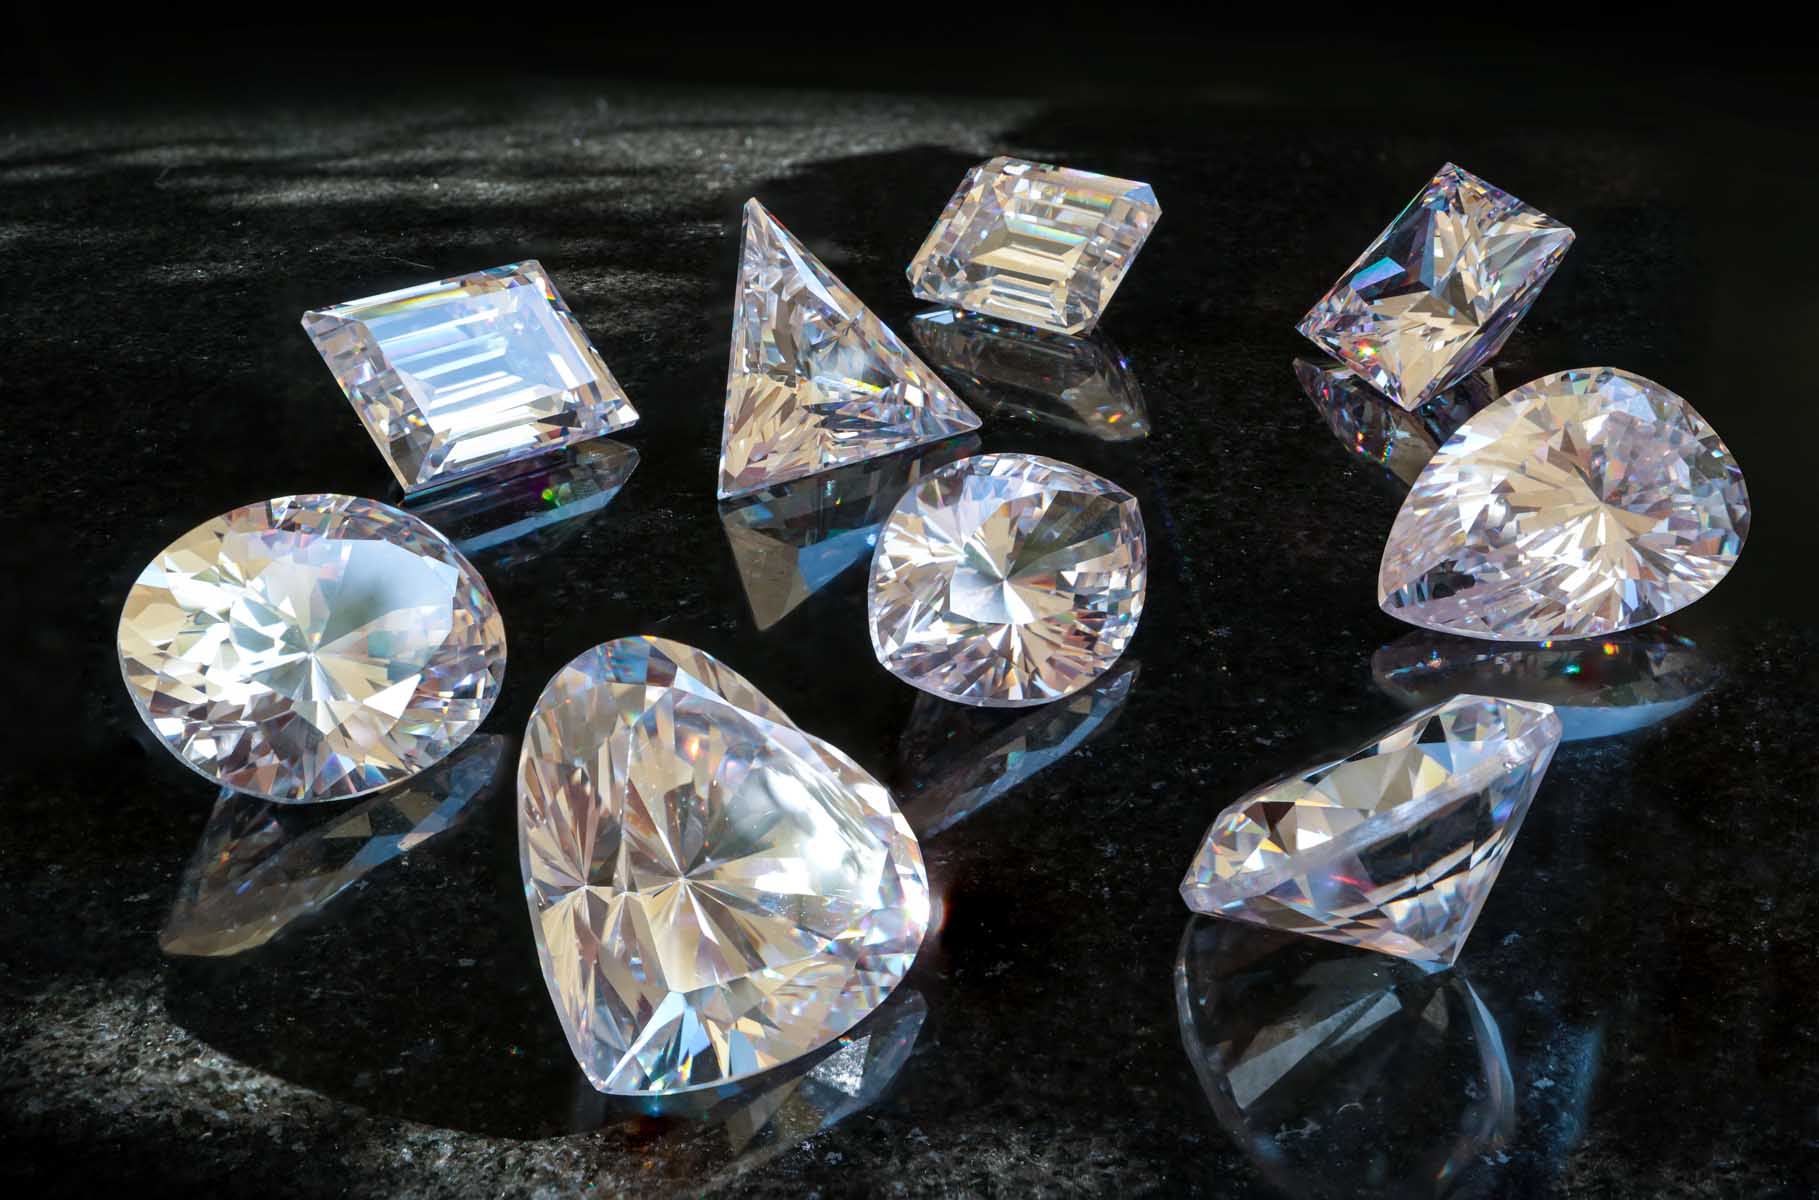 Инвестирование в драгоценности first class diamonds. Красивые бриллианты. Огранка драгоценных камней.